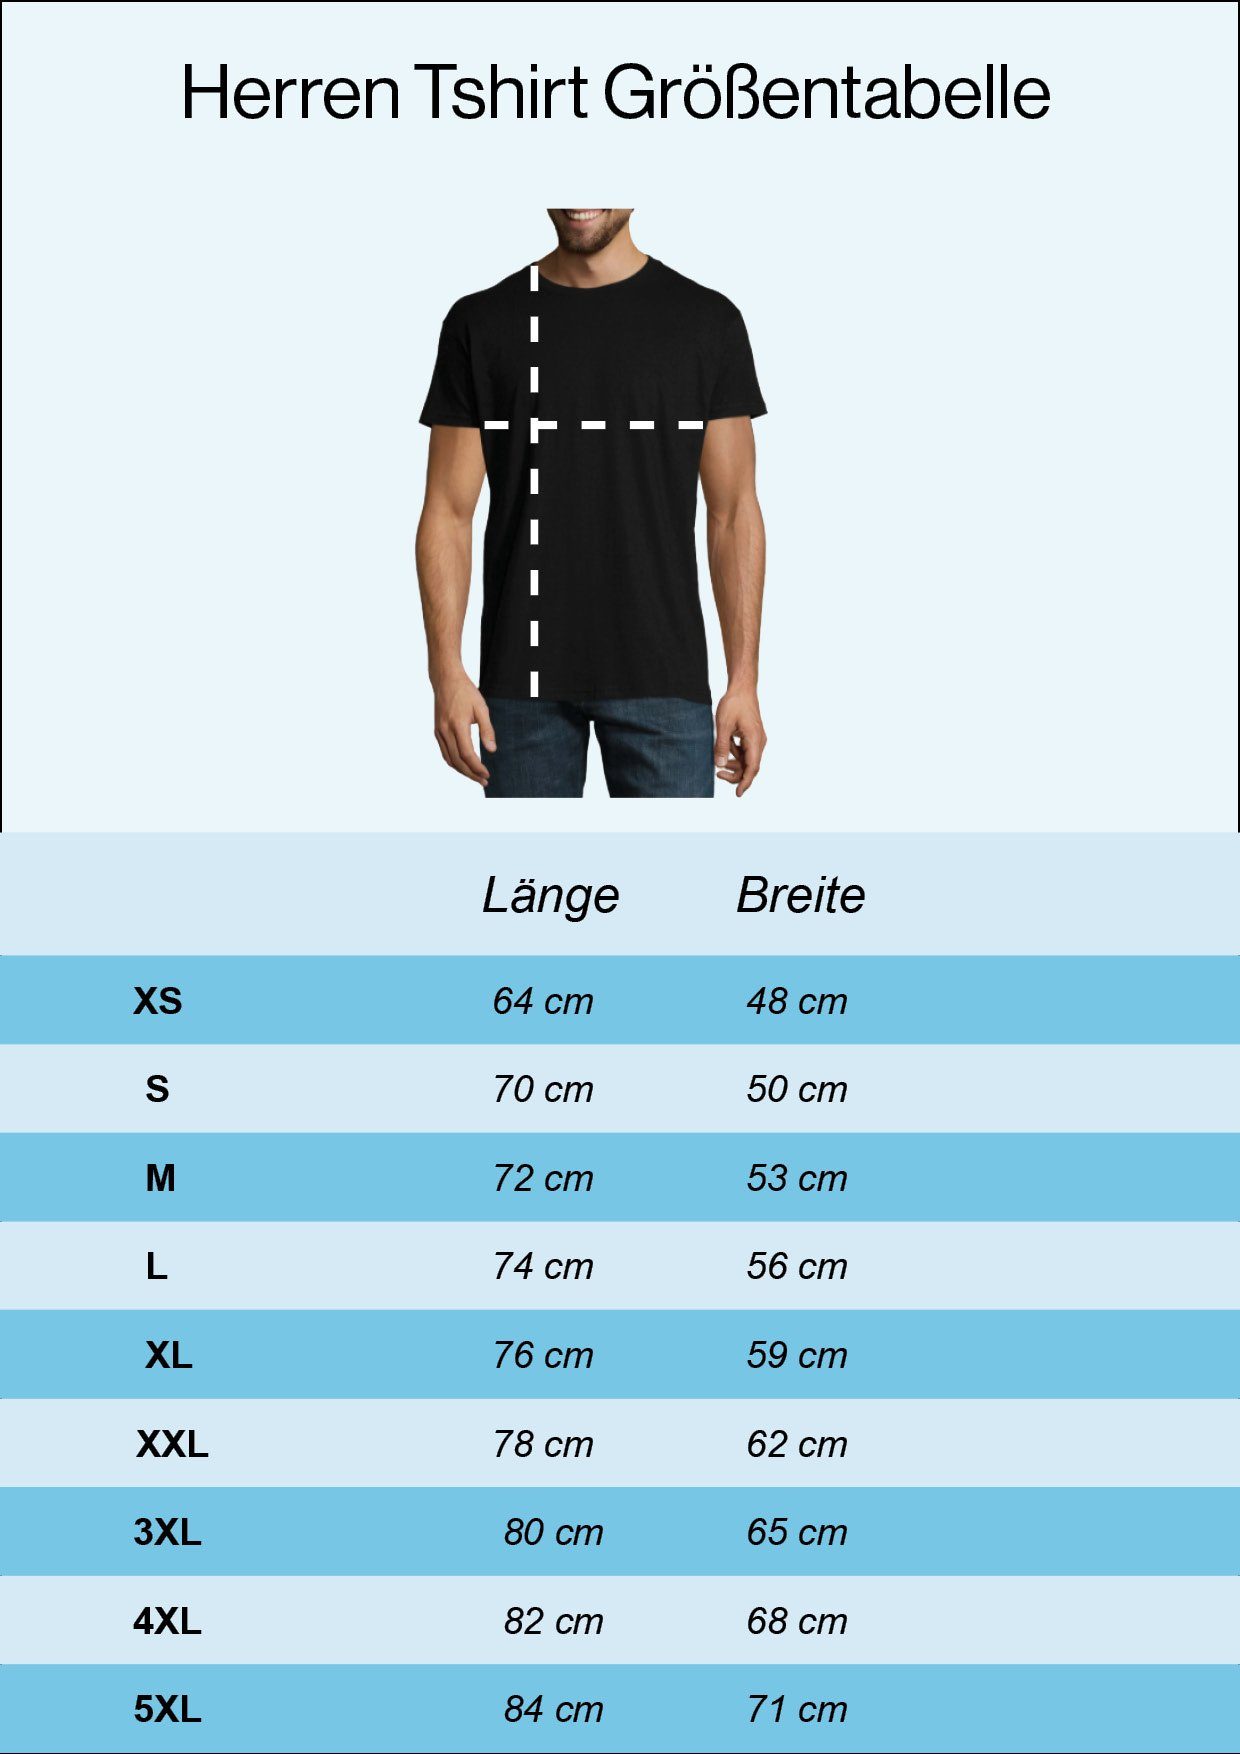 Youth Designz T-Shirt "Kegeln Und Darum Bier, Hier" Schwarz Bin Herren mit Ich Frontprint lustigem T-Shirt